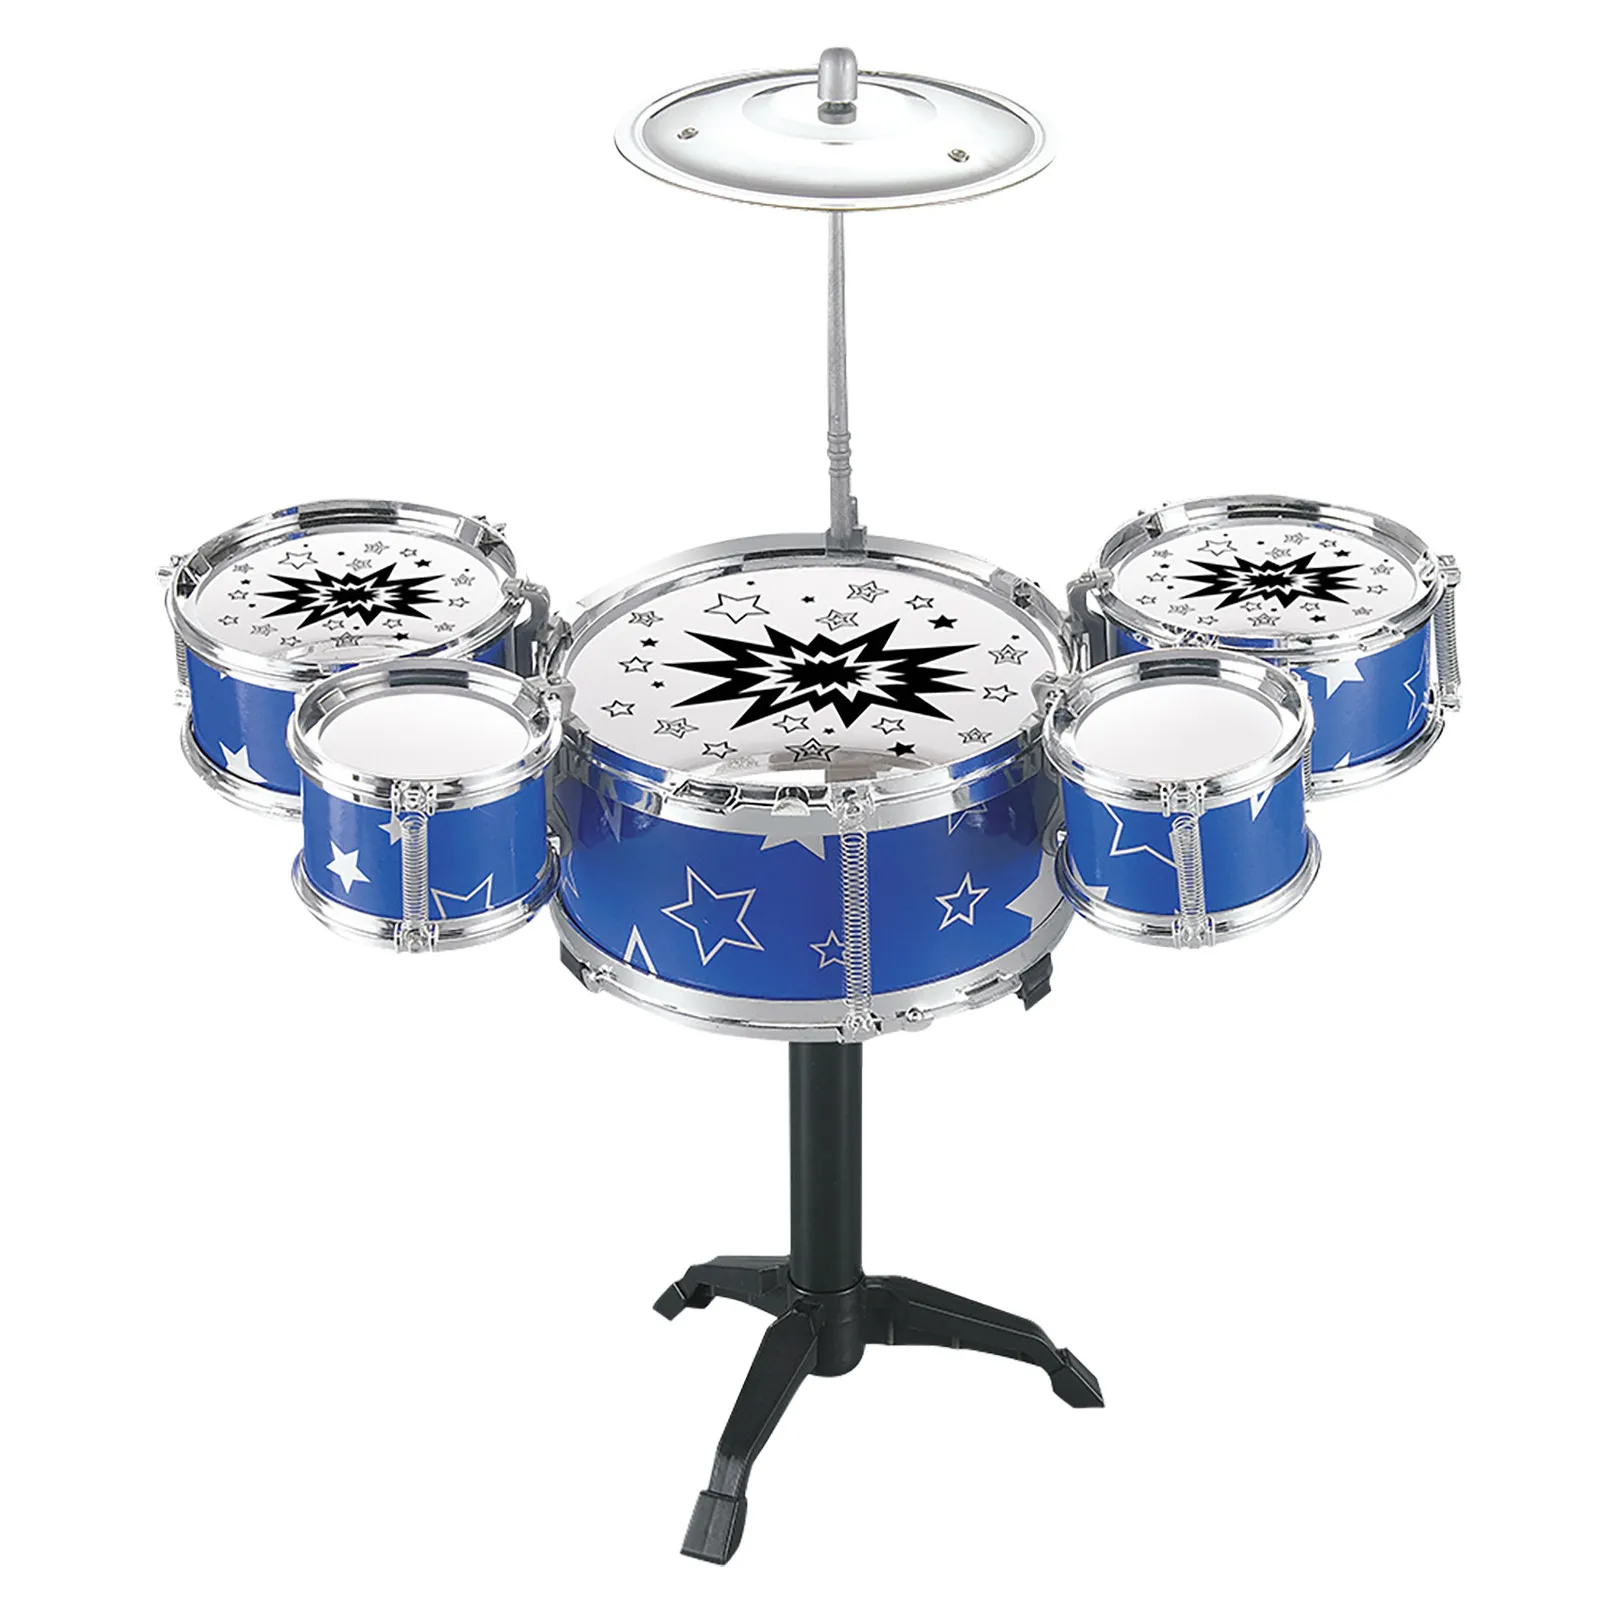 Новый джазовый мини-барабанный набор для детей из 5 барабанов и 2 палочек в подарок, игрушка для подростков, обучающая.